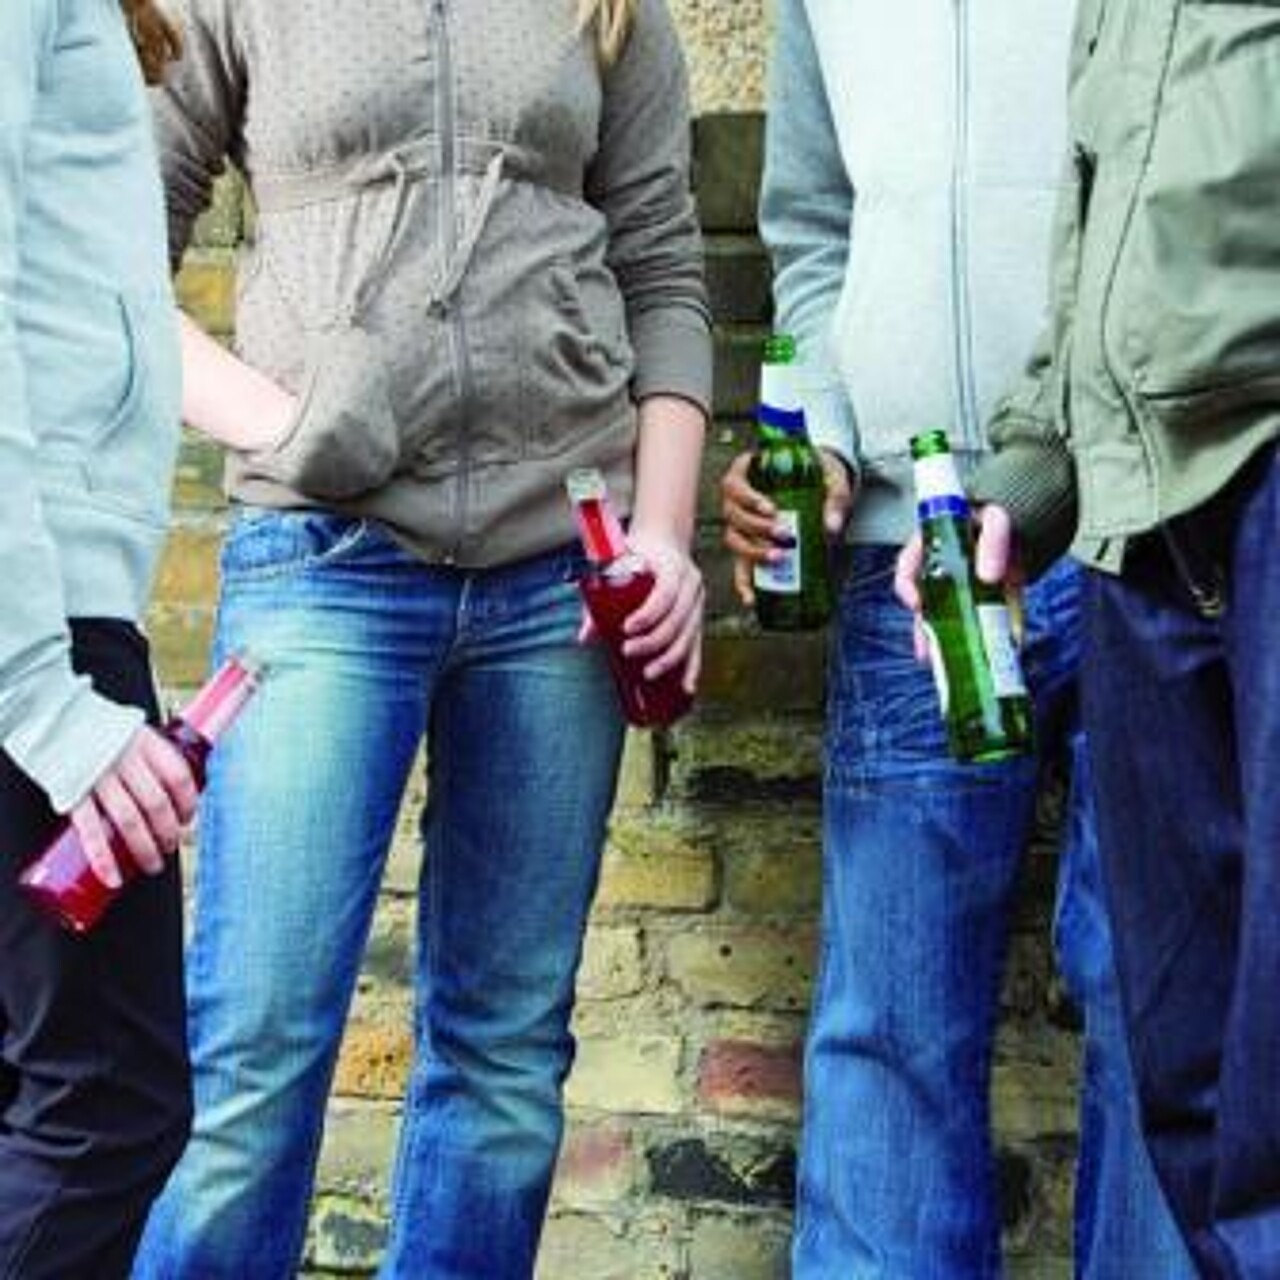 Eine Gruppe Jugendlicher mit jeweils einer Flasche Alkohol in der Hand steht vor einer Wand